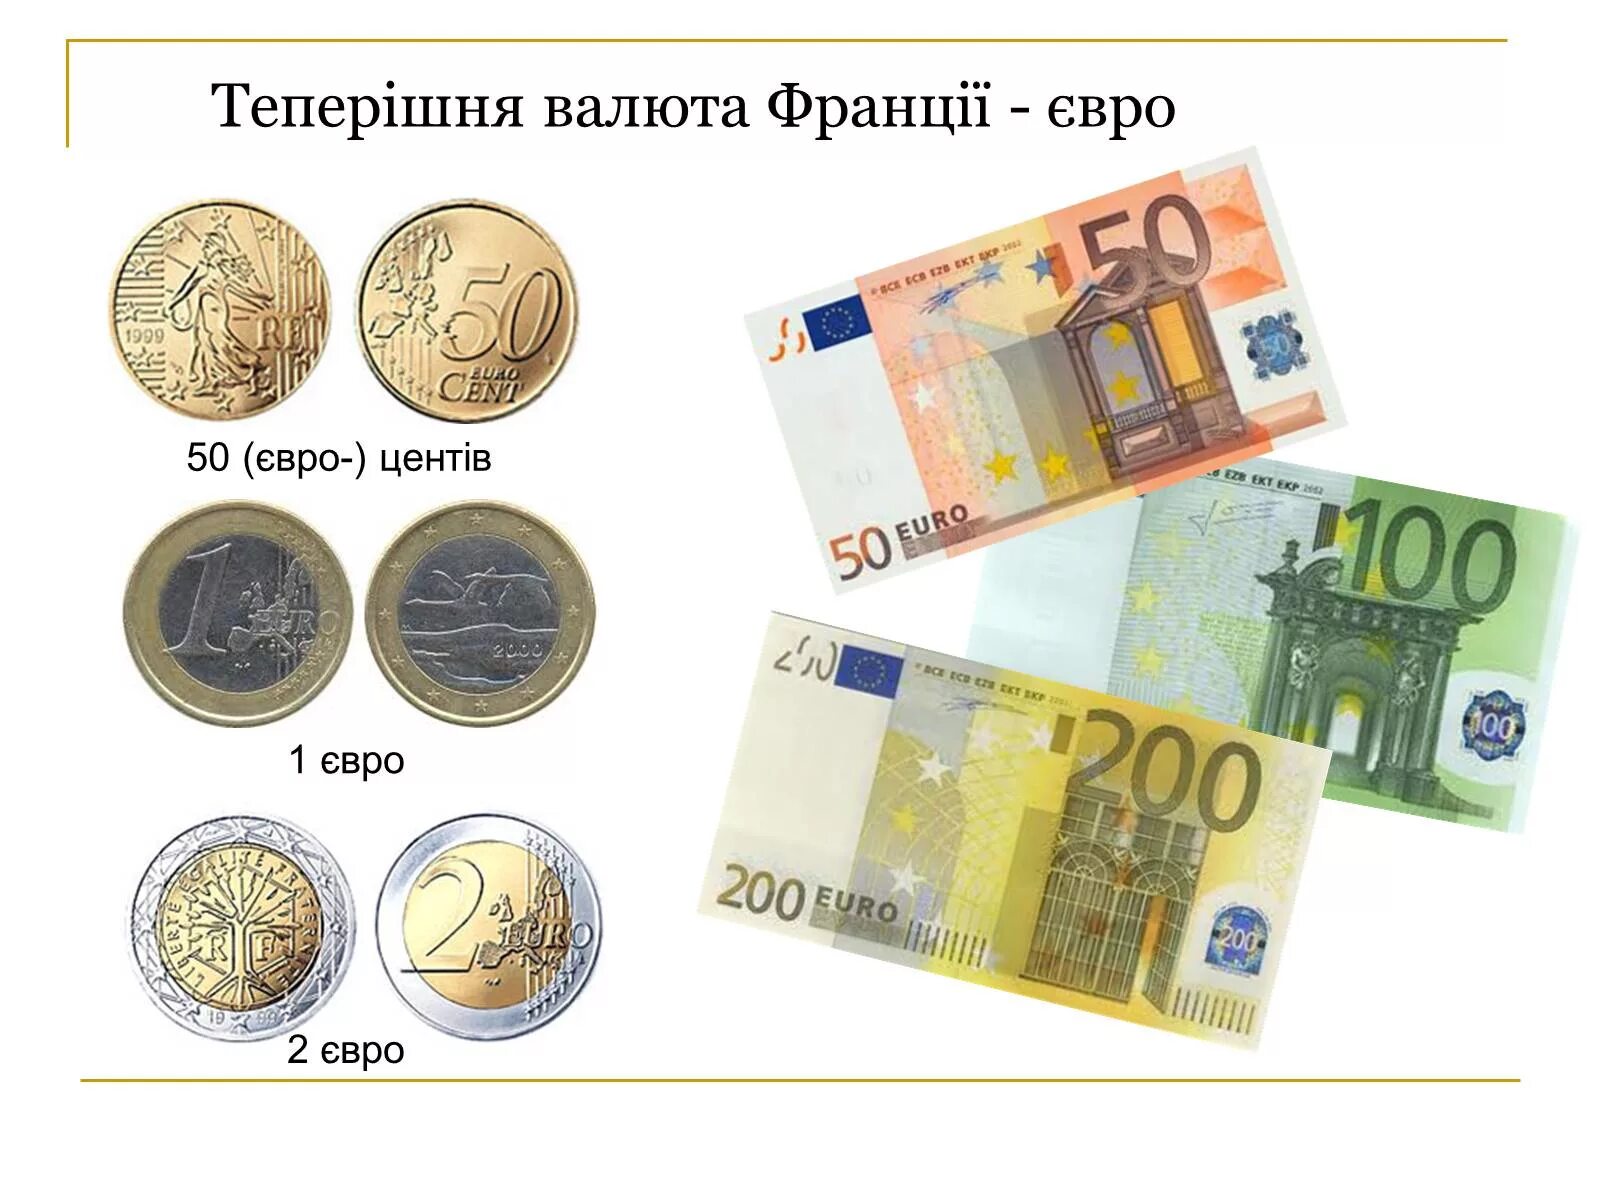 Национальная валюта евро. Денежная единица Франции сейчас. Денежная валюта Франции. Денежная единица евро. Франция евро деньги.